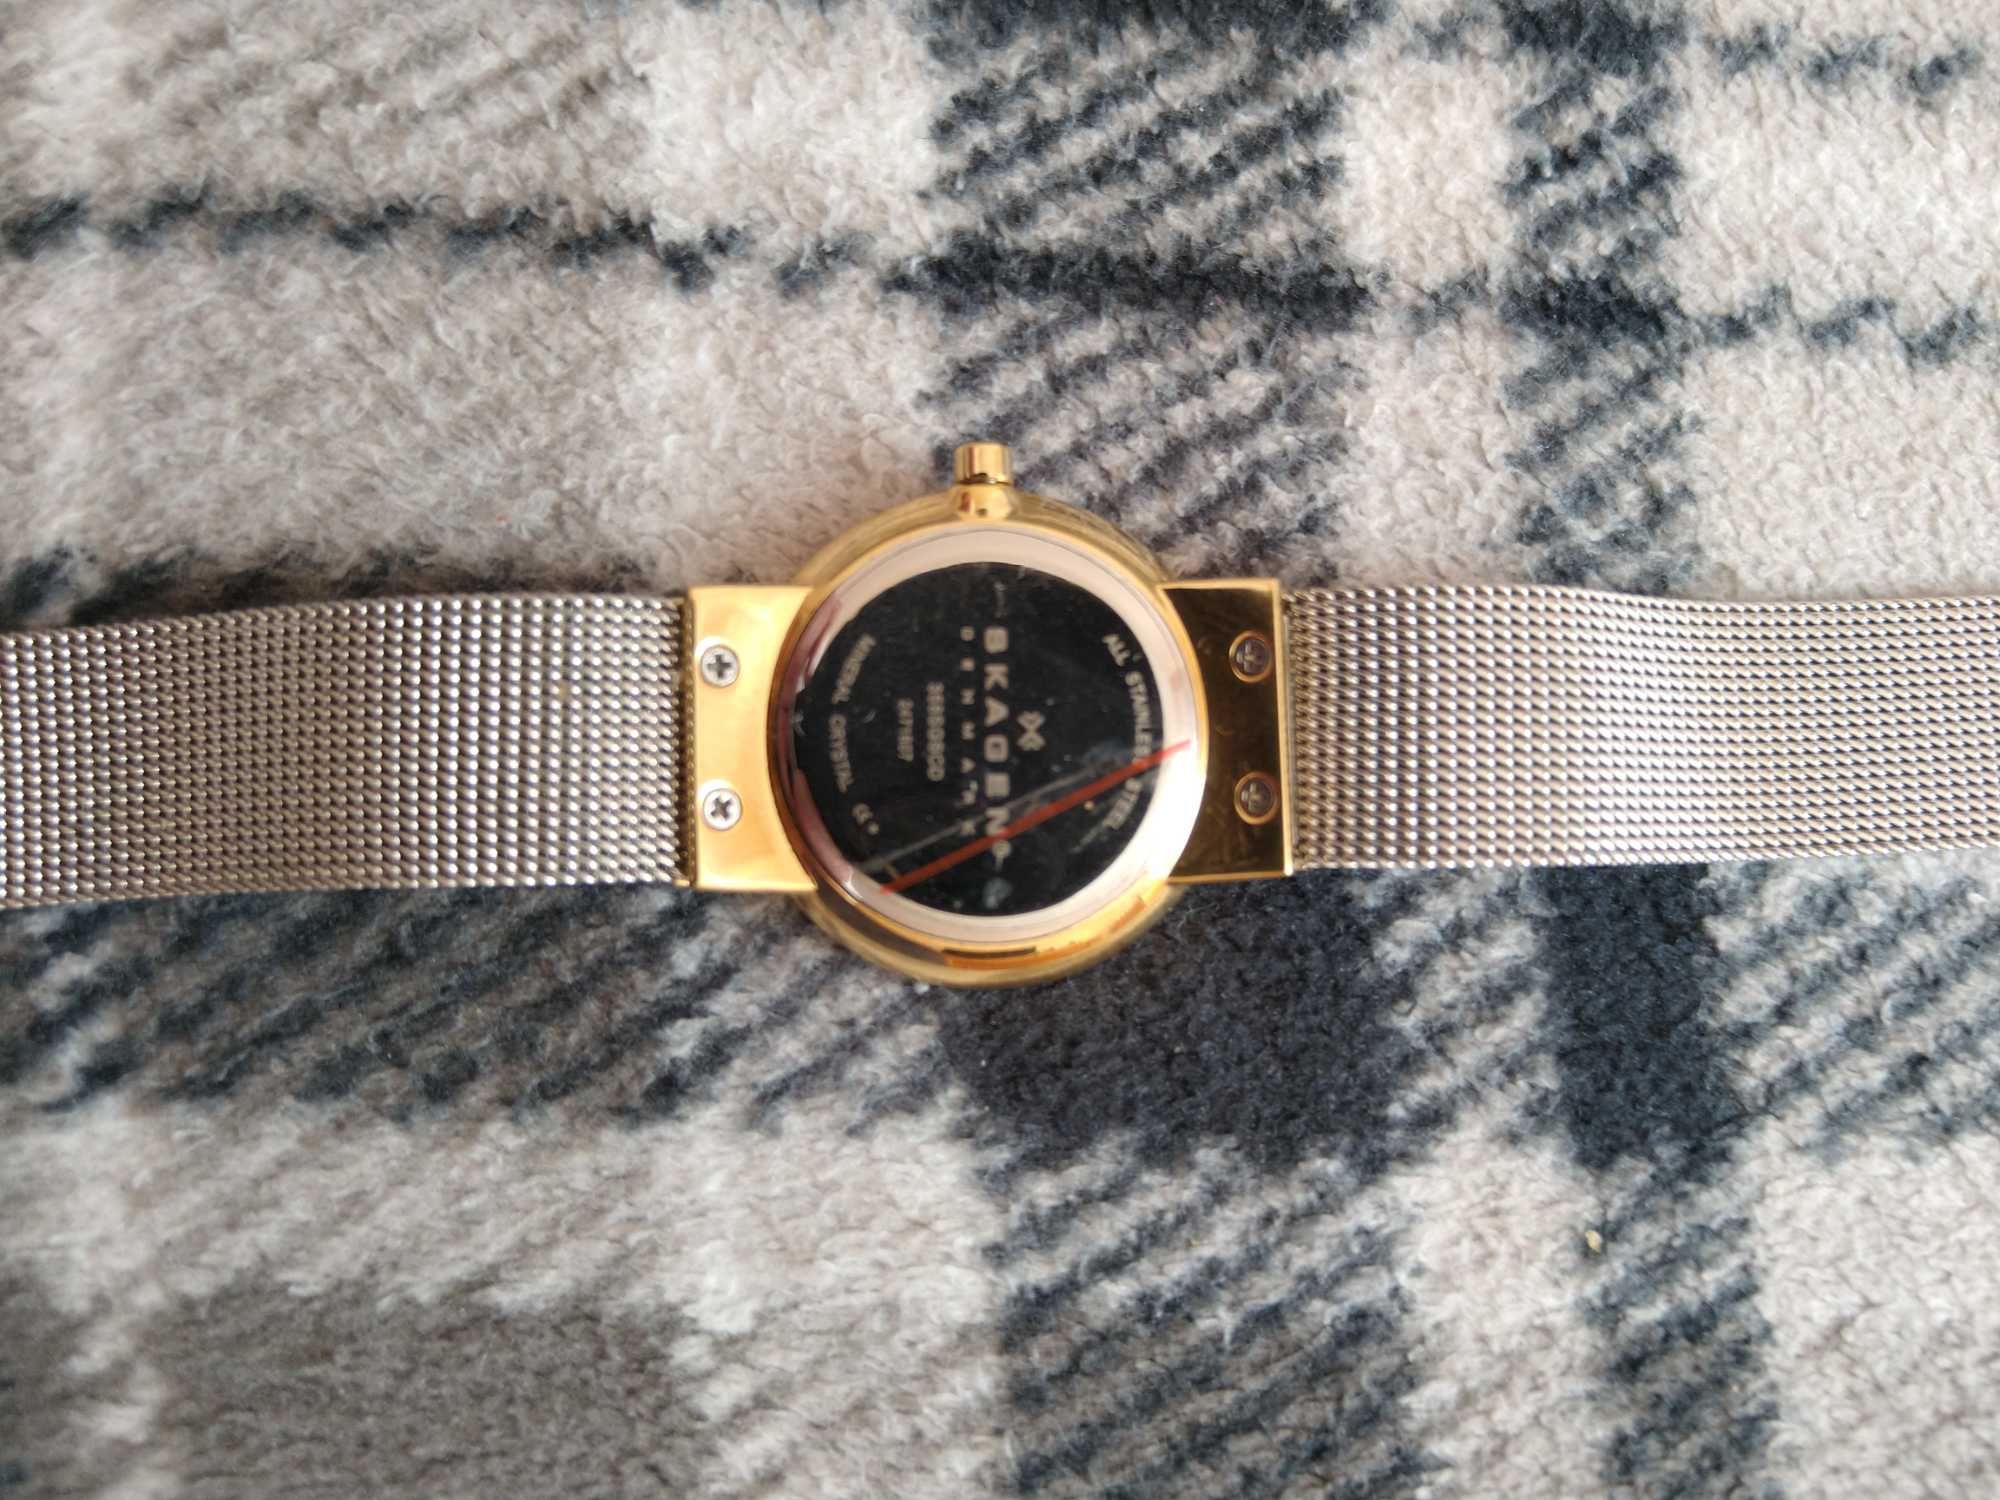 Sprzedam zegarek SKAGEN-damski.Jak nowy.